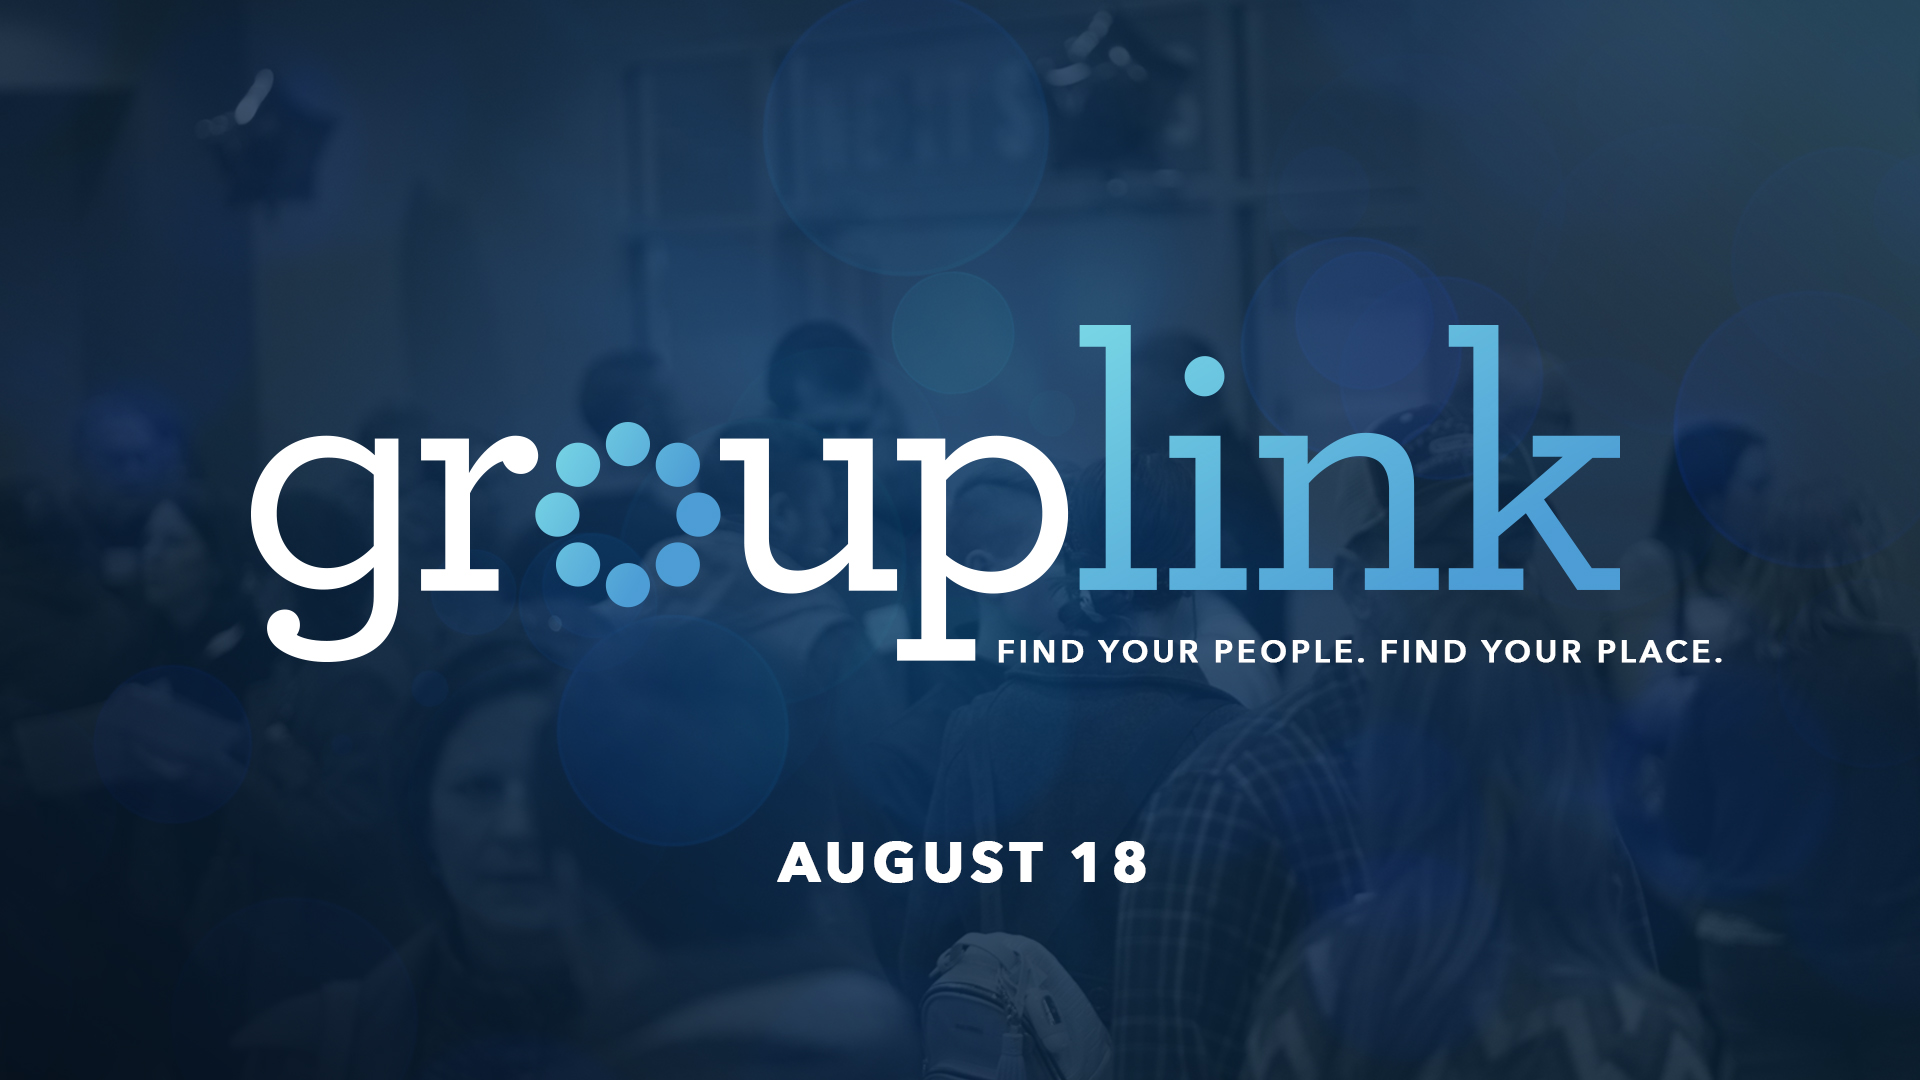 GroupLink - August 18